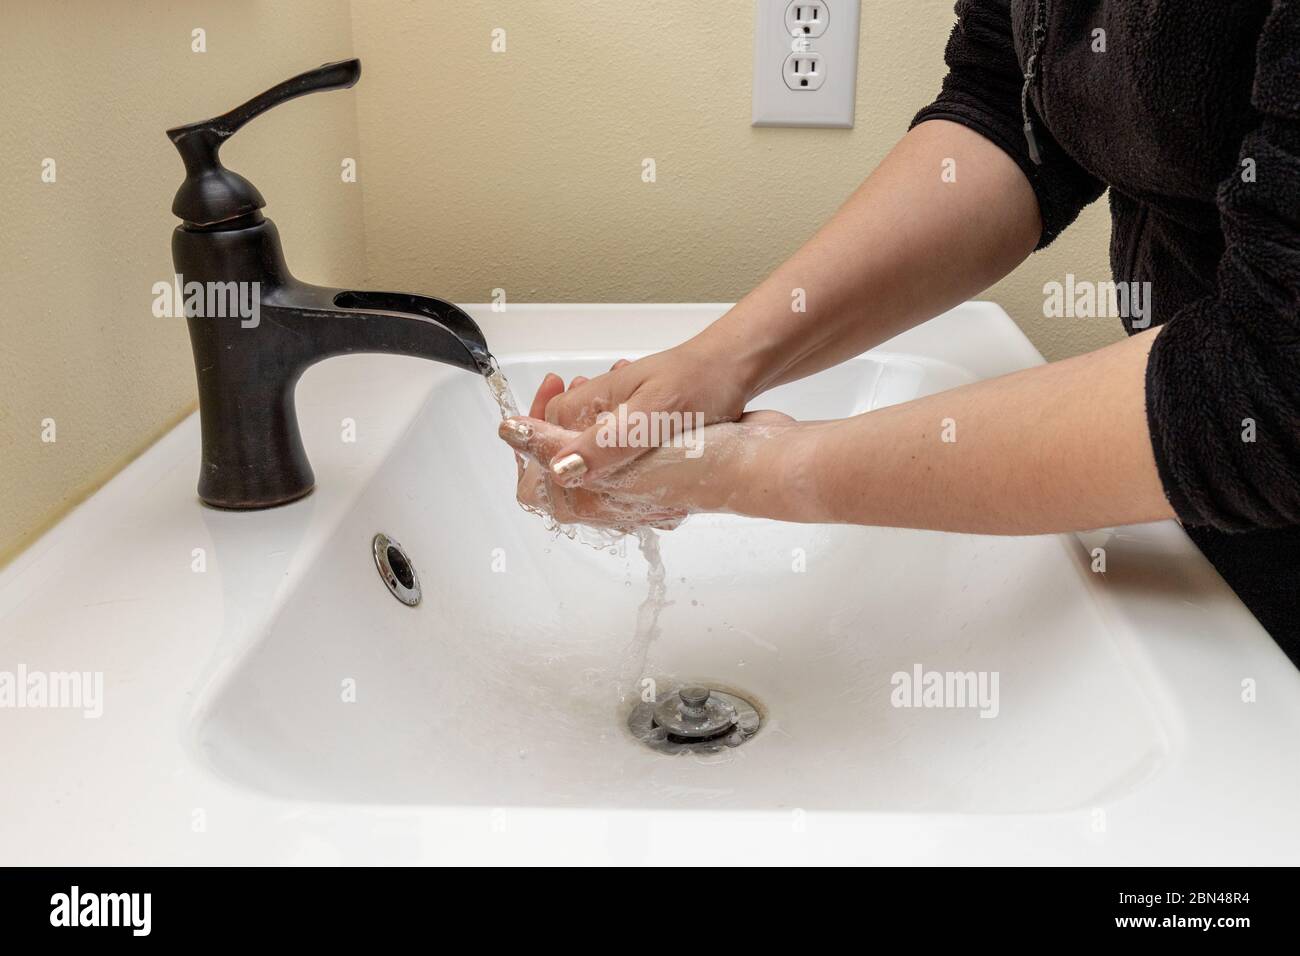 Donna lavando le mani con acqua saponata per proteggere contro i germi Foto Stock